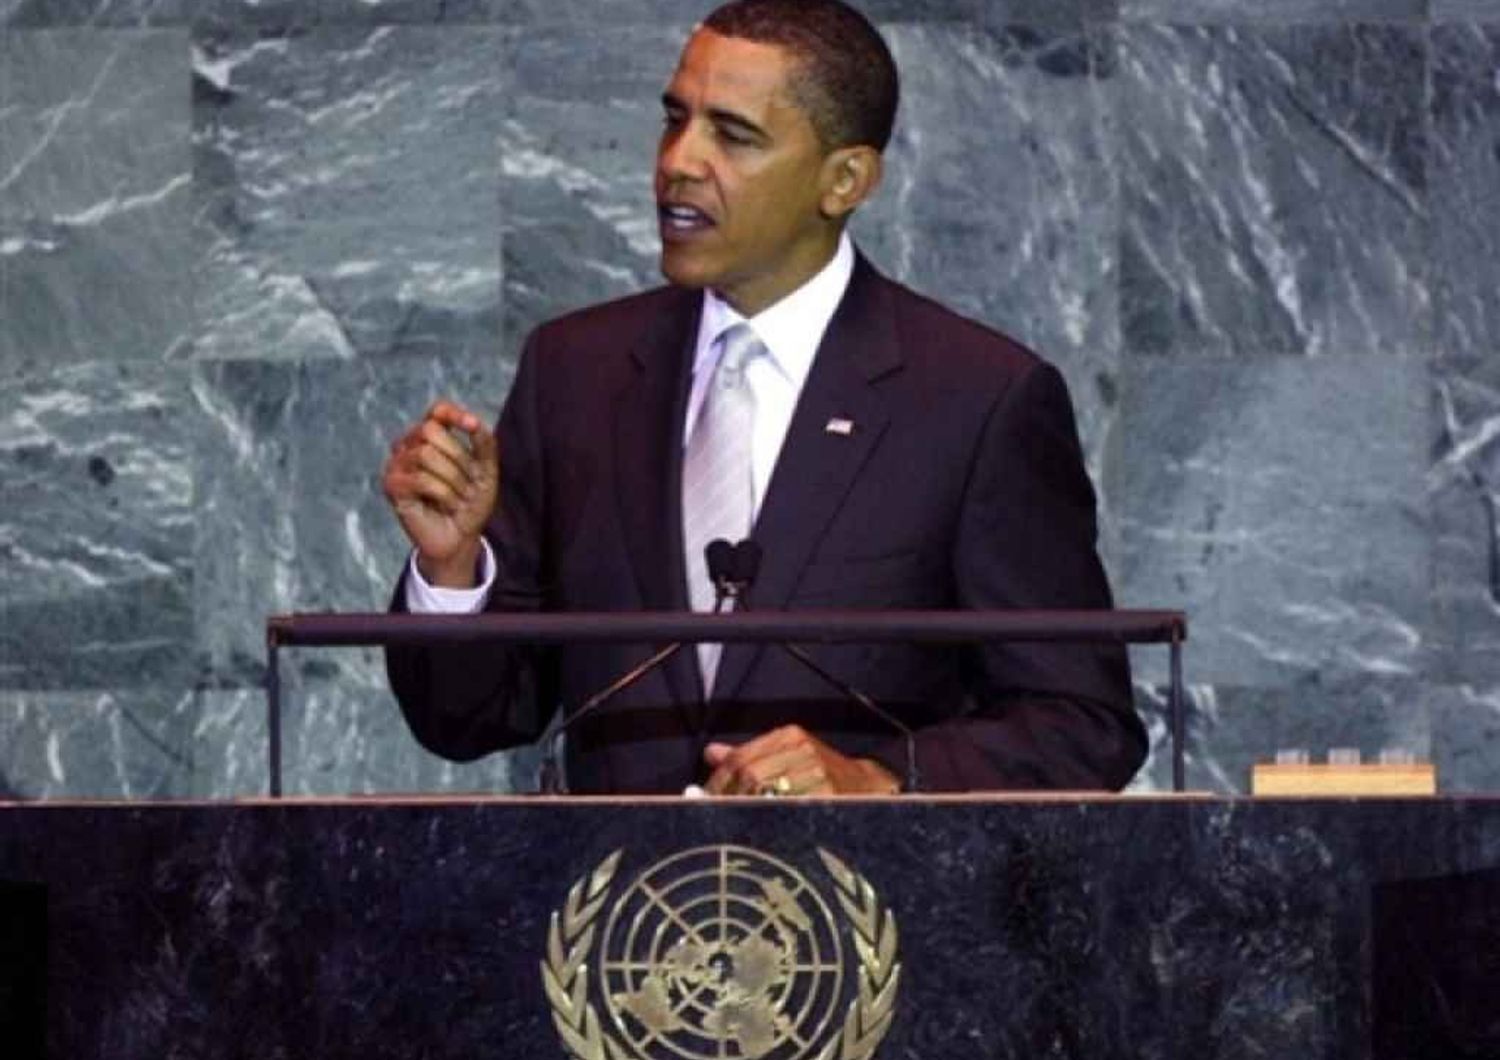 L'appello di Obama al mondo "Tutti uniti per distruggere l'Isis"